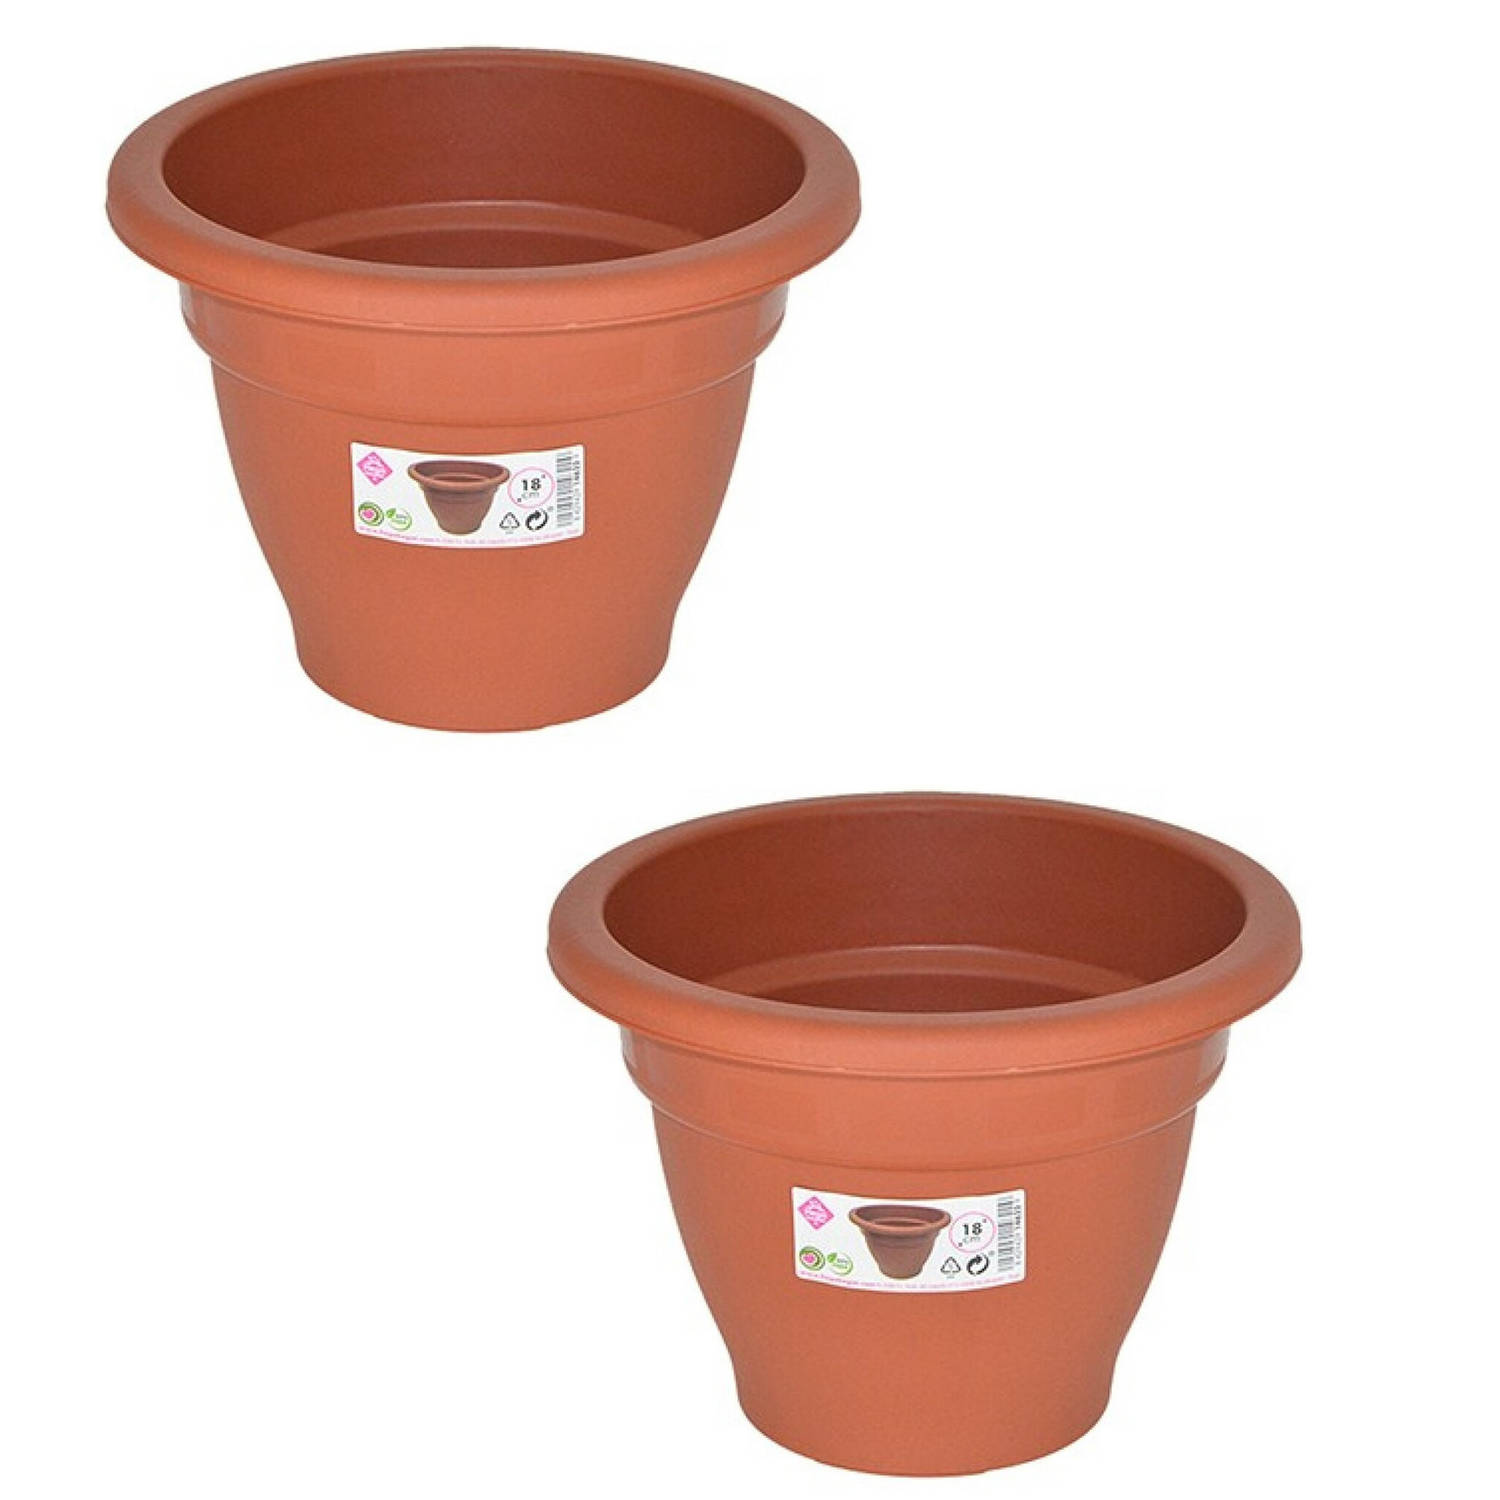 Set van 2x stuks terra cotta kleur ronde plantenpot/bloempot kunststof diameter 18 cm - Plantenpotte